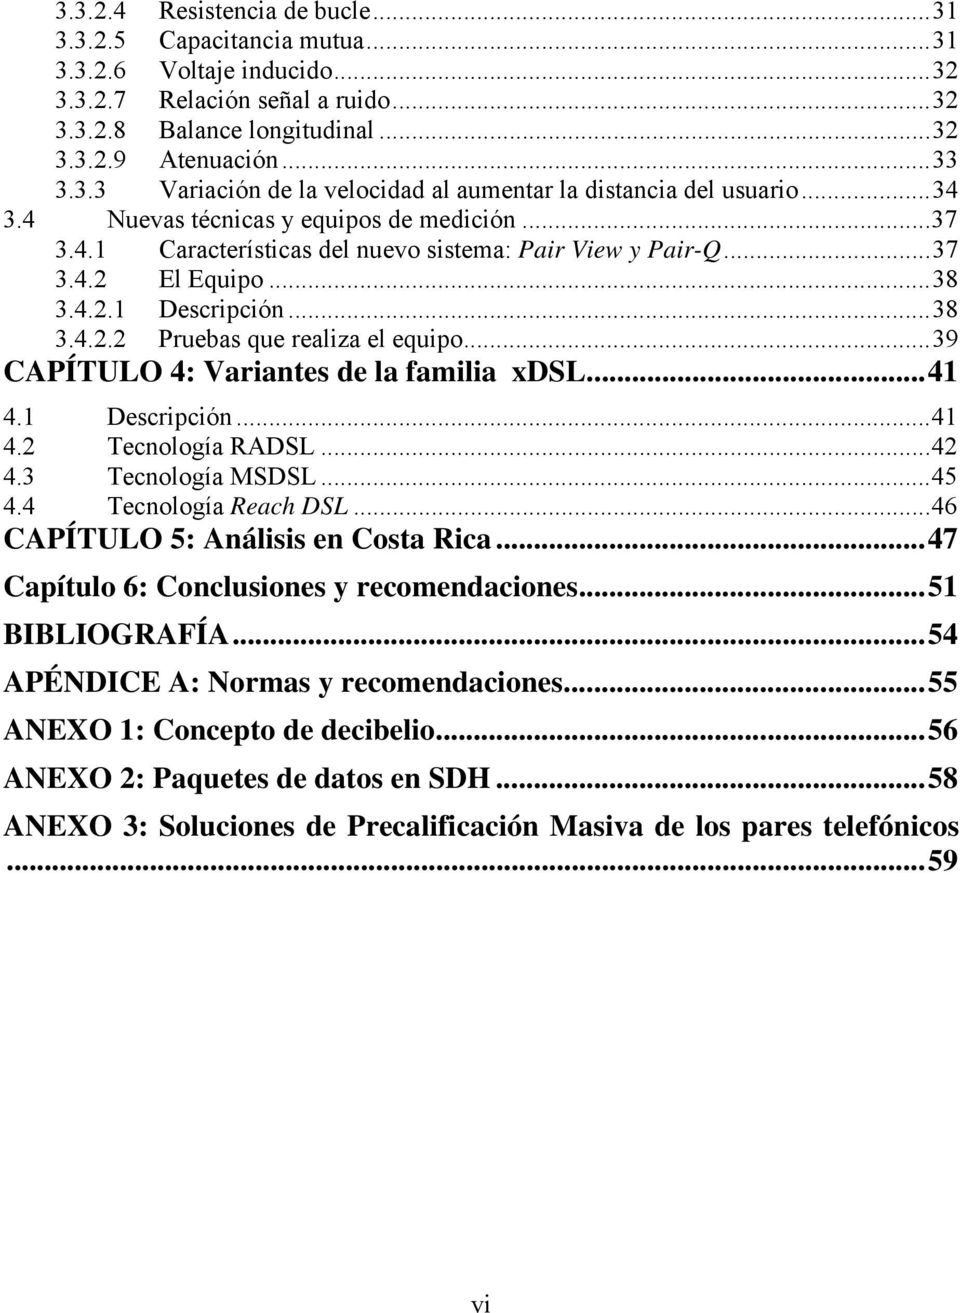 ..39 CAPÍTULO 4: Variantes de la familia xdsl...41 4.1 Descripción...41 4.2 Tecnología RADSL...42 4.3 Tecnología MSDSL...45 4.4 Tecnología Reach DSL...46 CAPÍTULO 5: Análisis en Costa Rica.